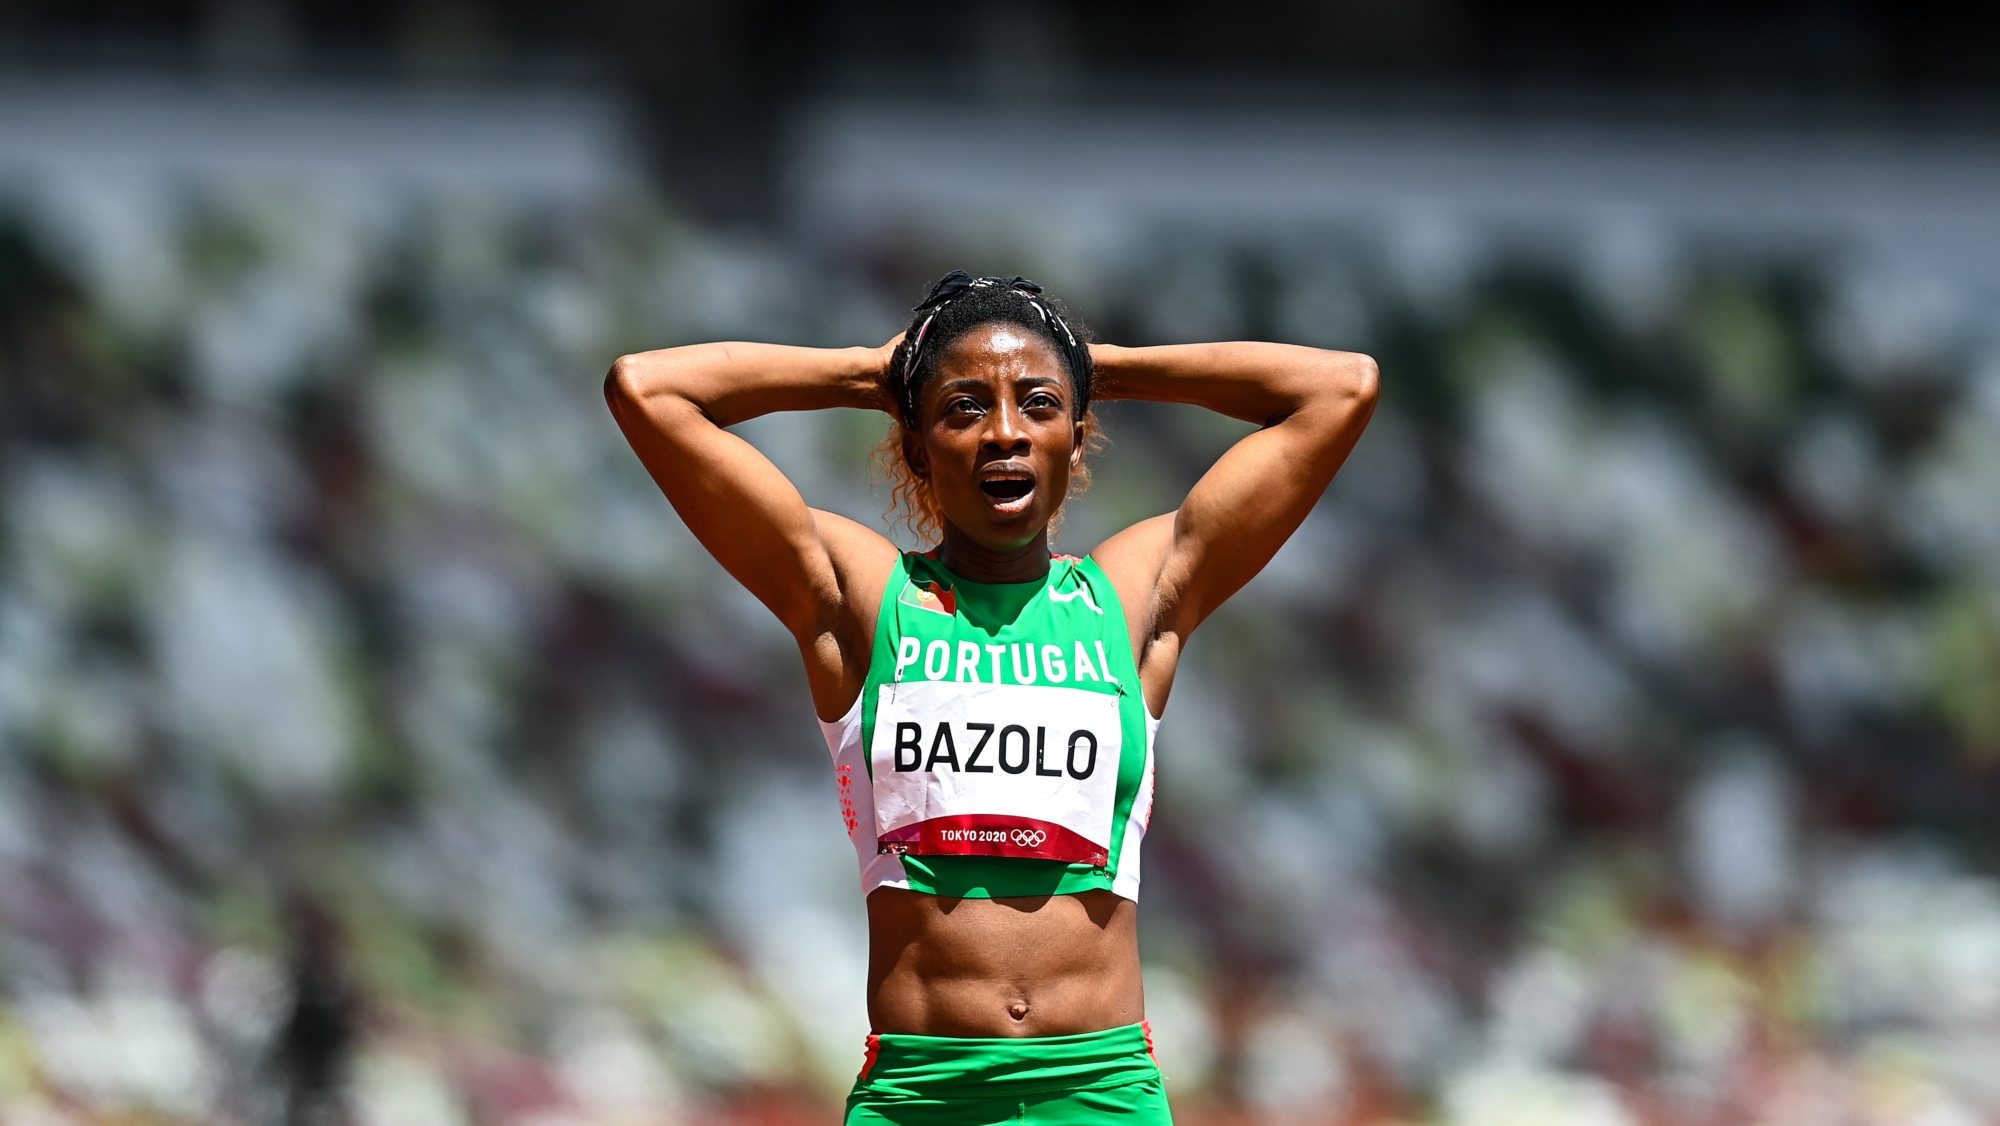 Lorene Bazolo ficou muito satisfeita com a zona da curva mas admite que podia ter feito mais na reta nas meias dos 200 metros